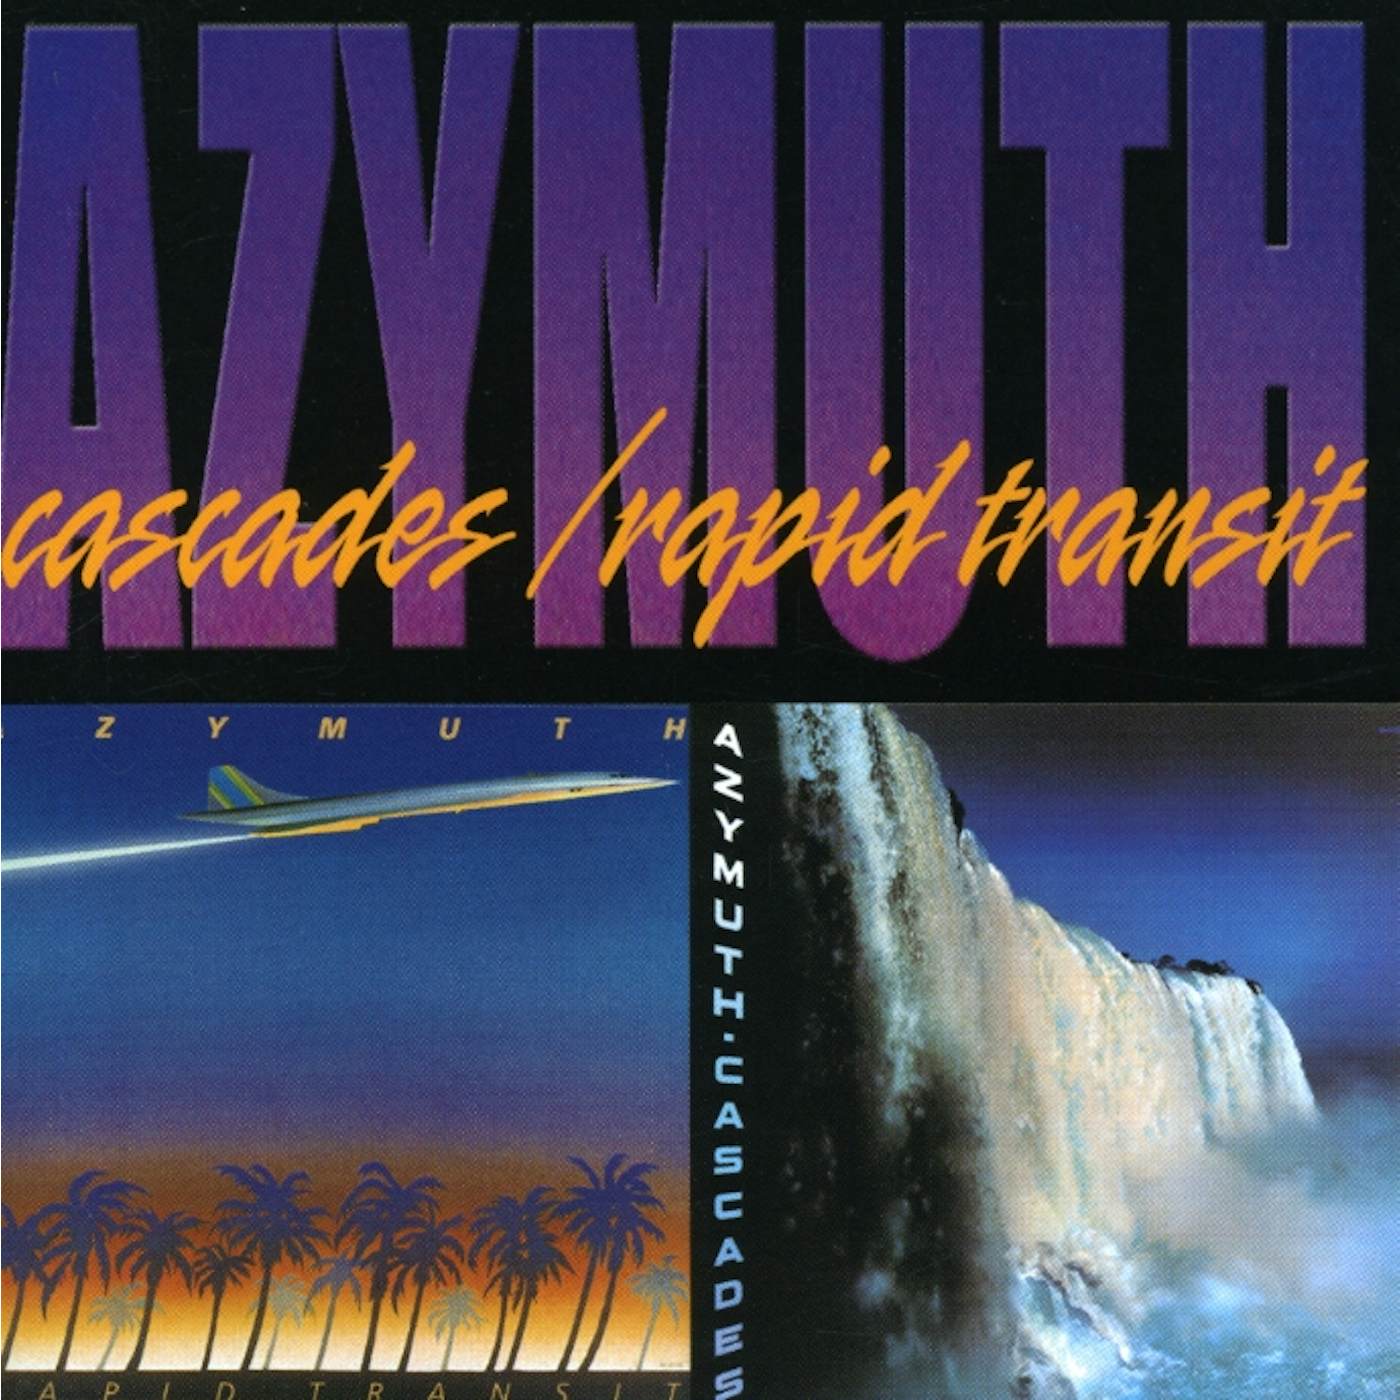 Azymuth CASCADES & RAPID TRANSIT CD